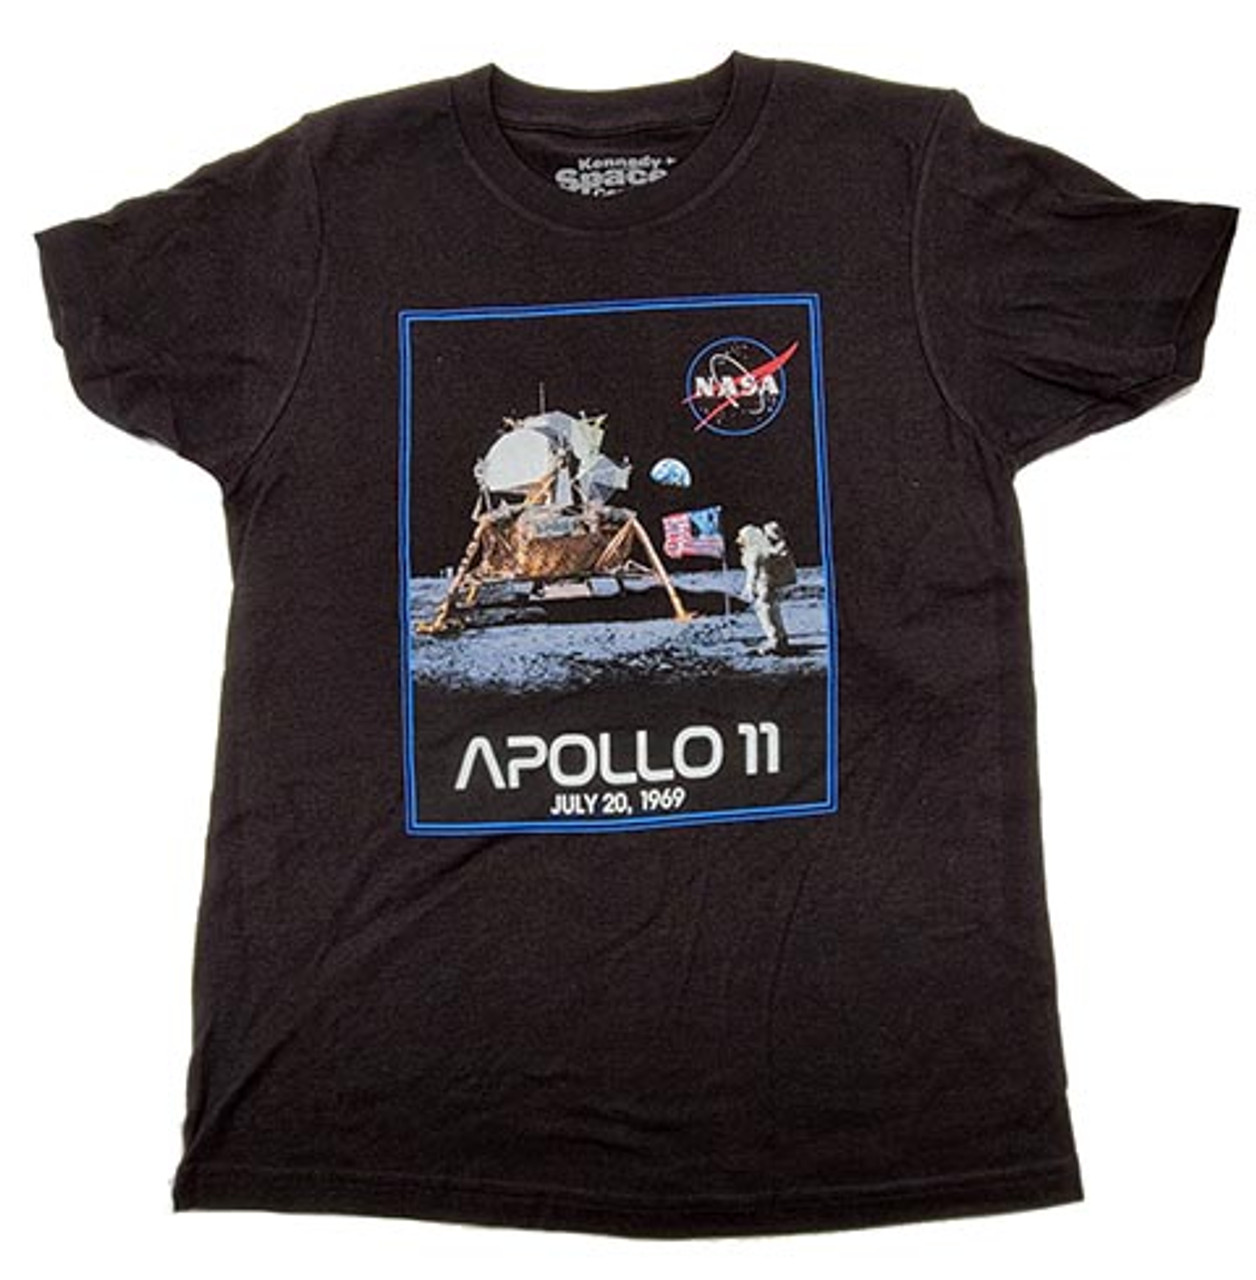 Apollo T-Shirt